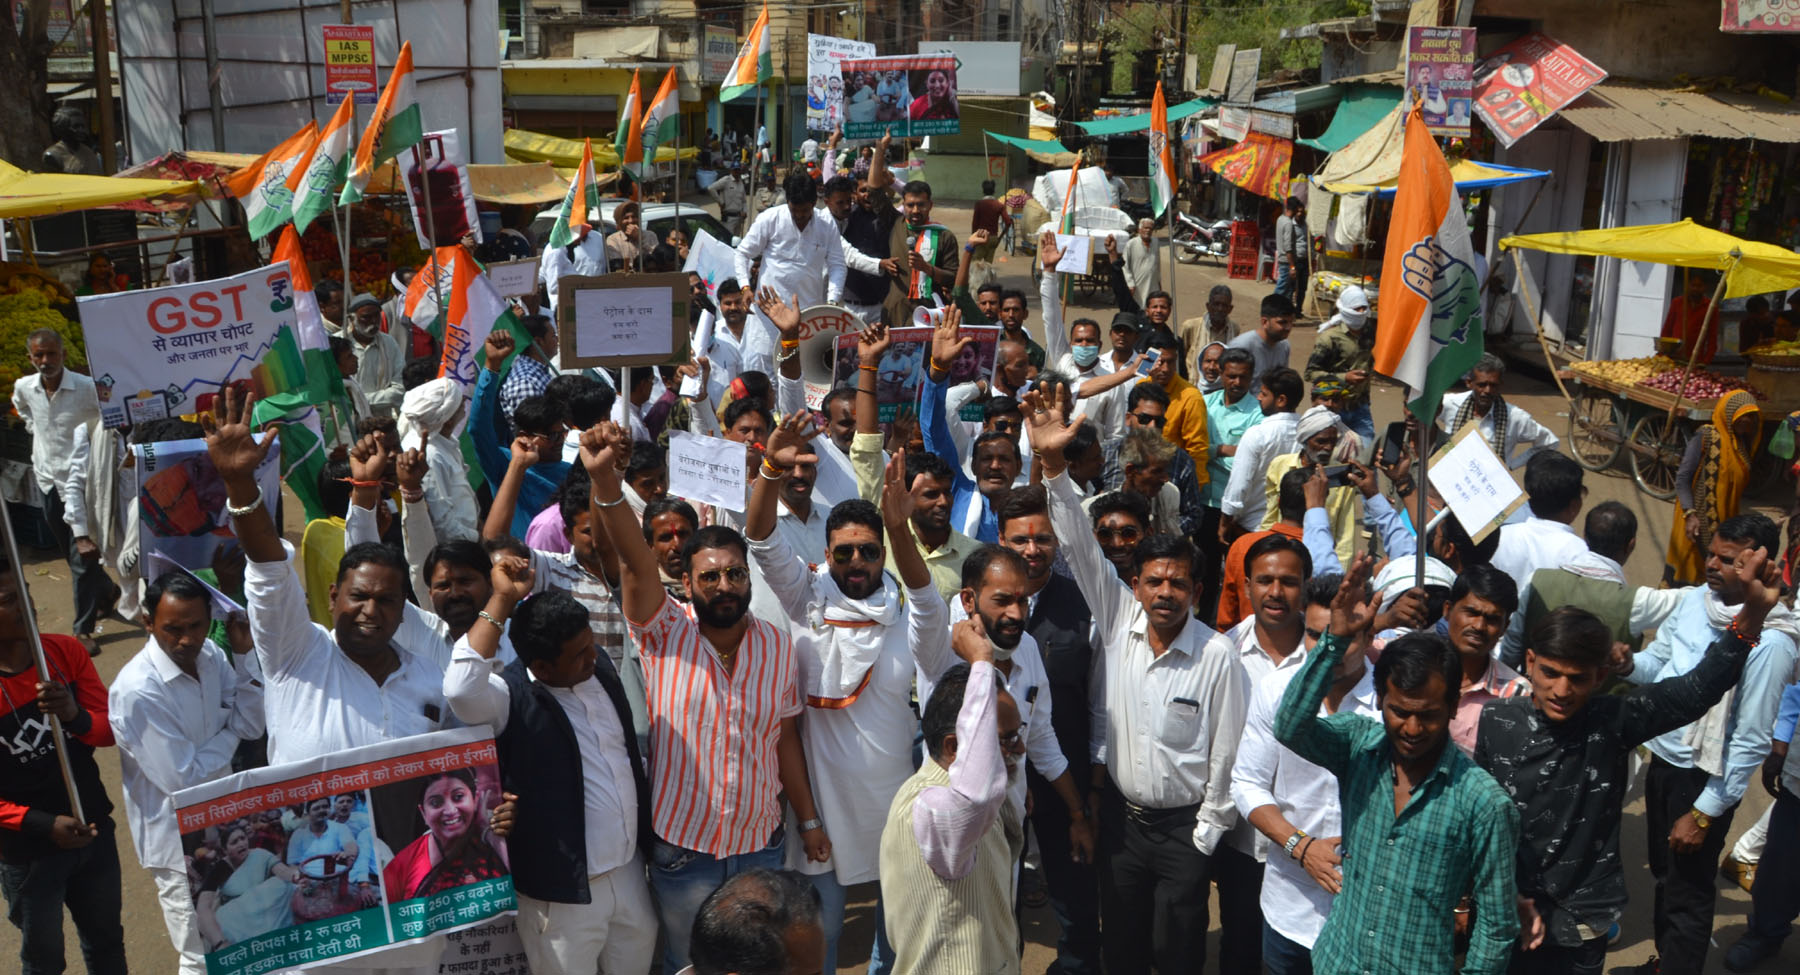 Opposed to inflation: कांग्रेस नेे किया प्रदर्शन, बैलगाड़ी के साथ निकाली रैली